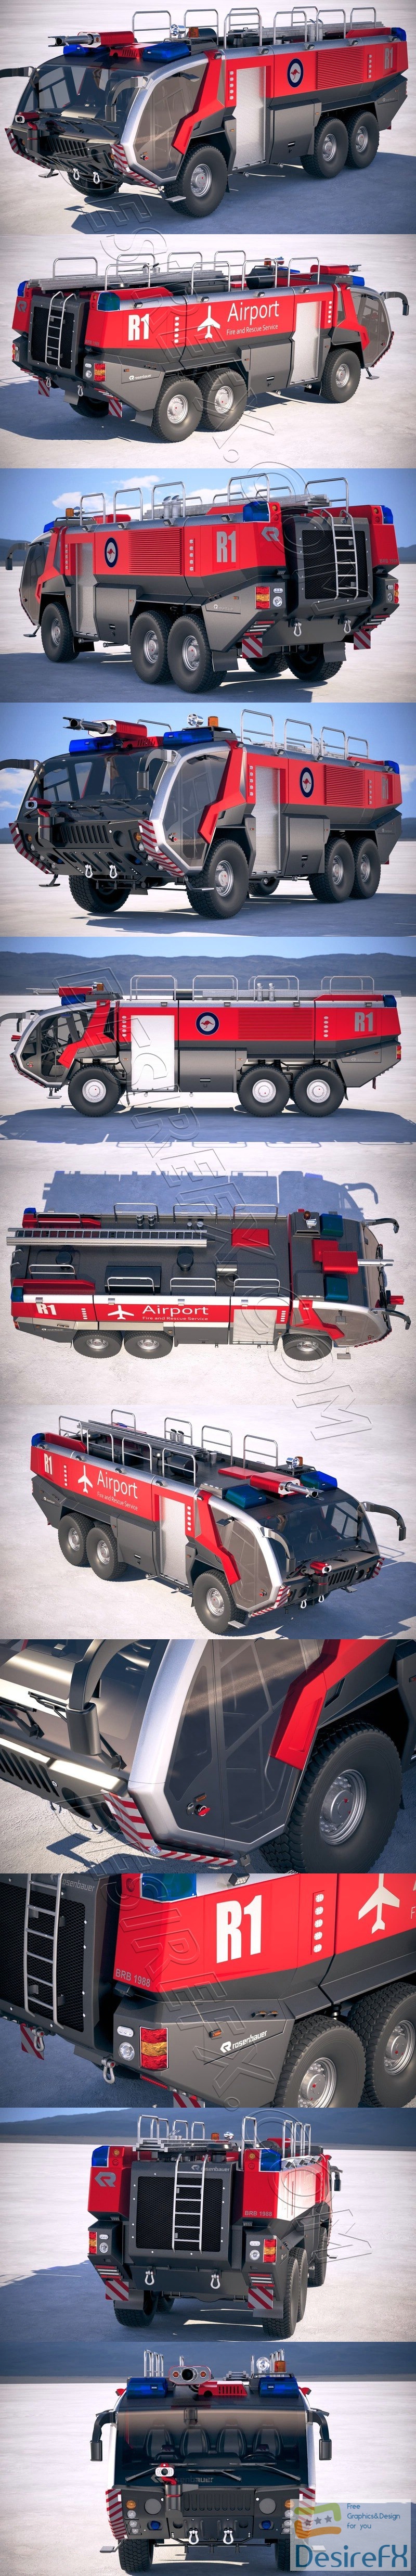 Rosenbauer Panther Fire Truck 6x6 3D Model